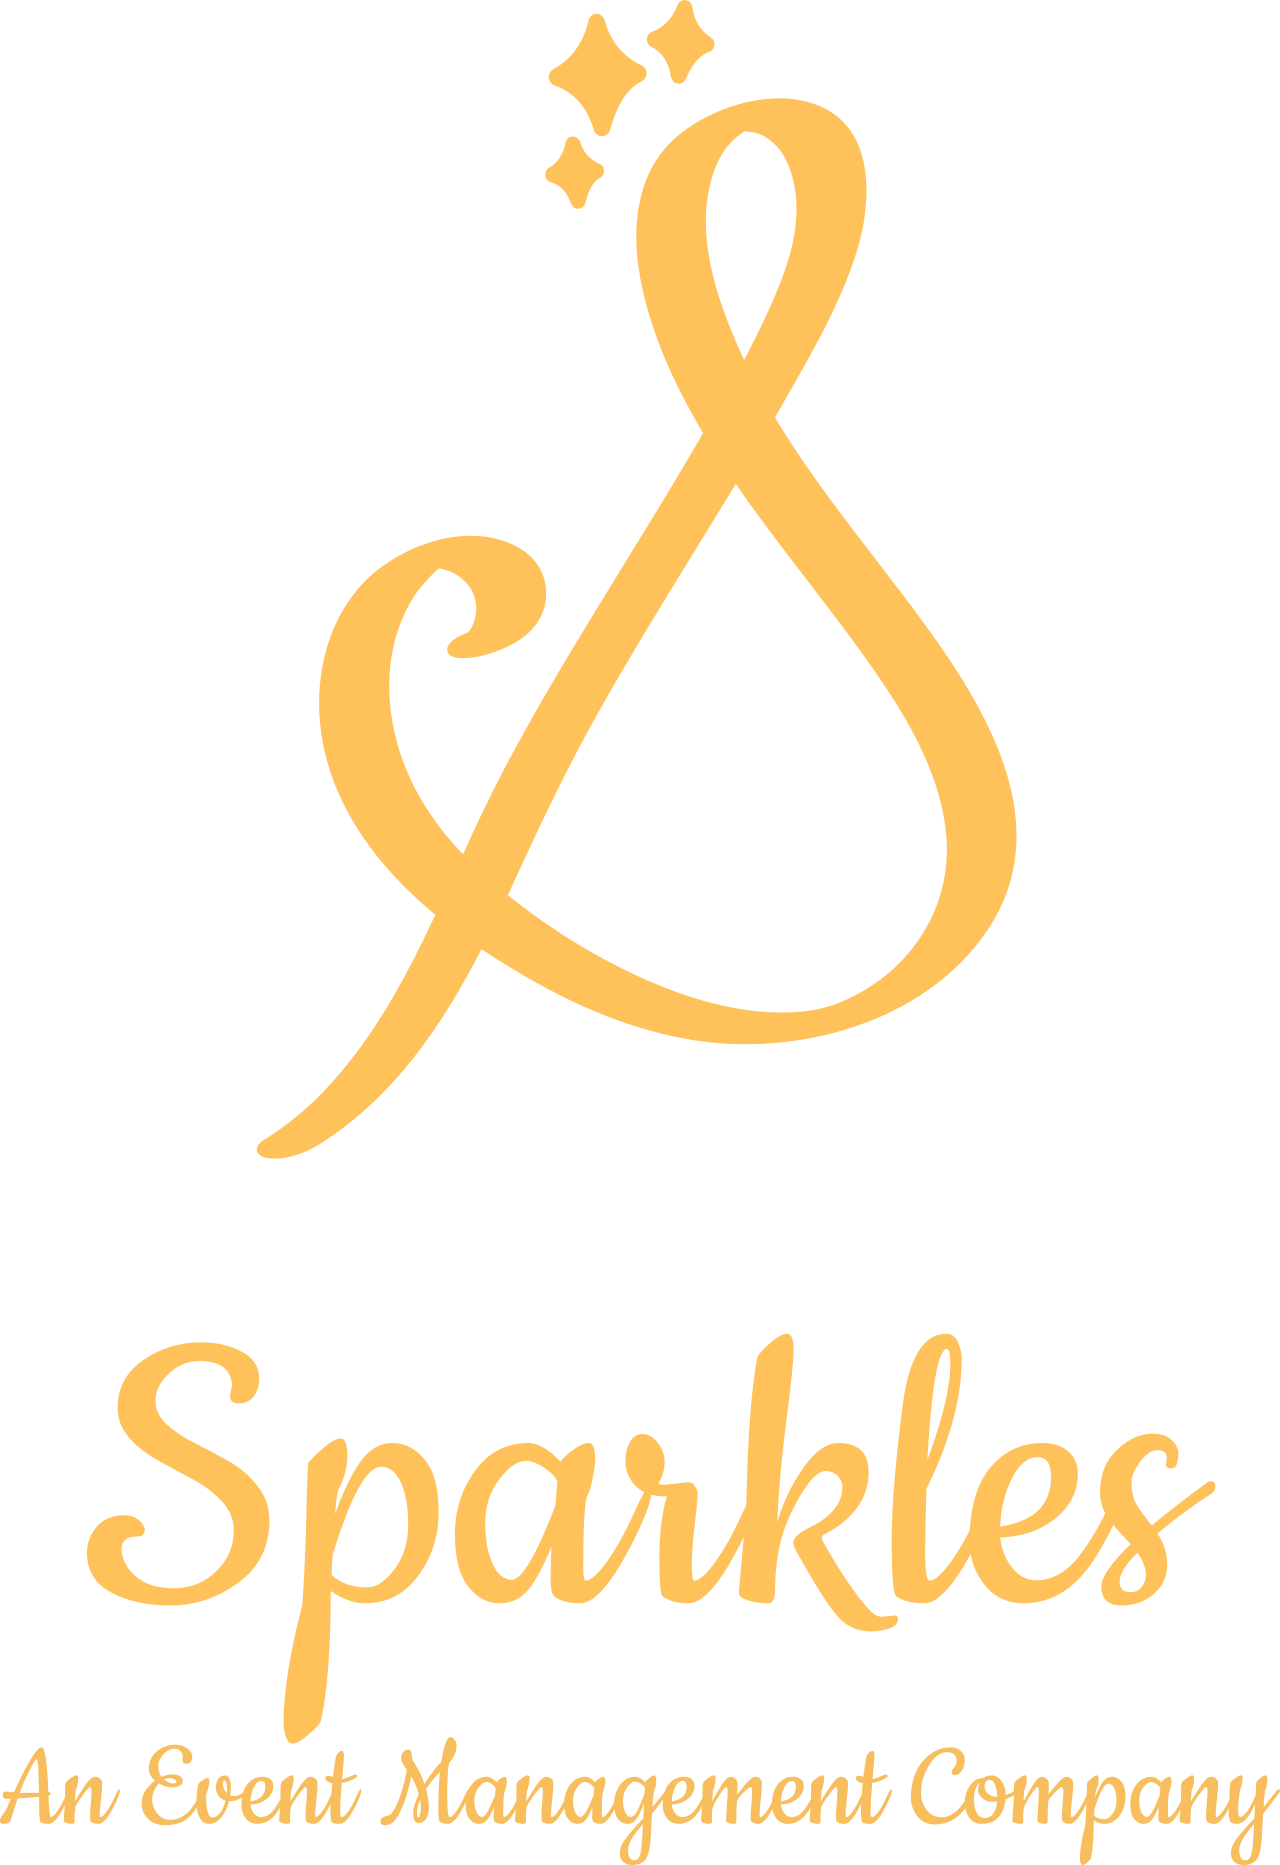 Sparkles's web page